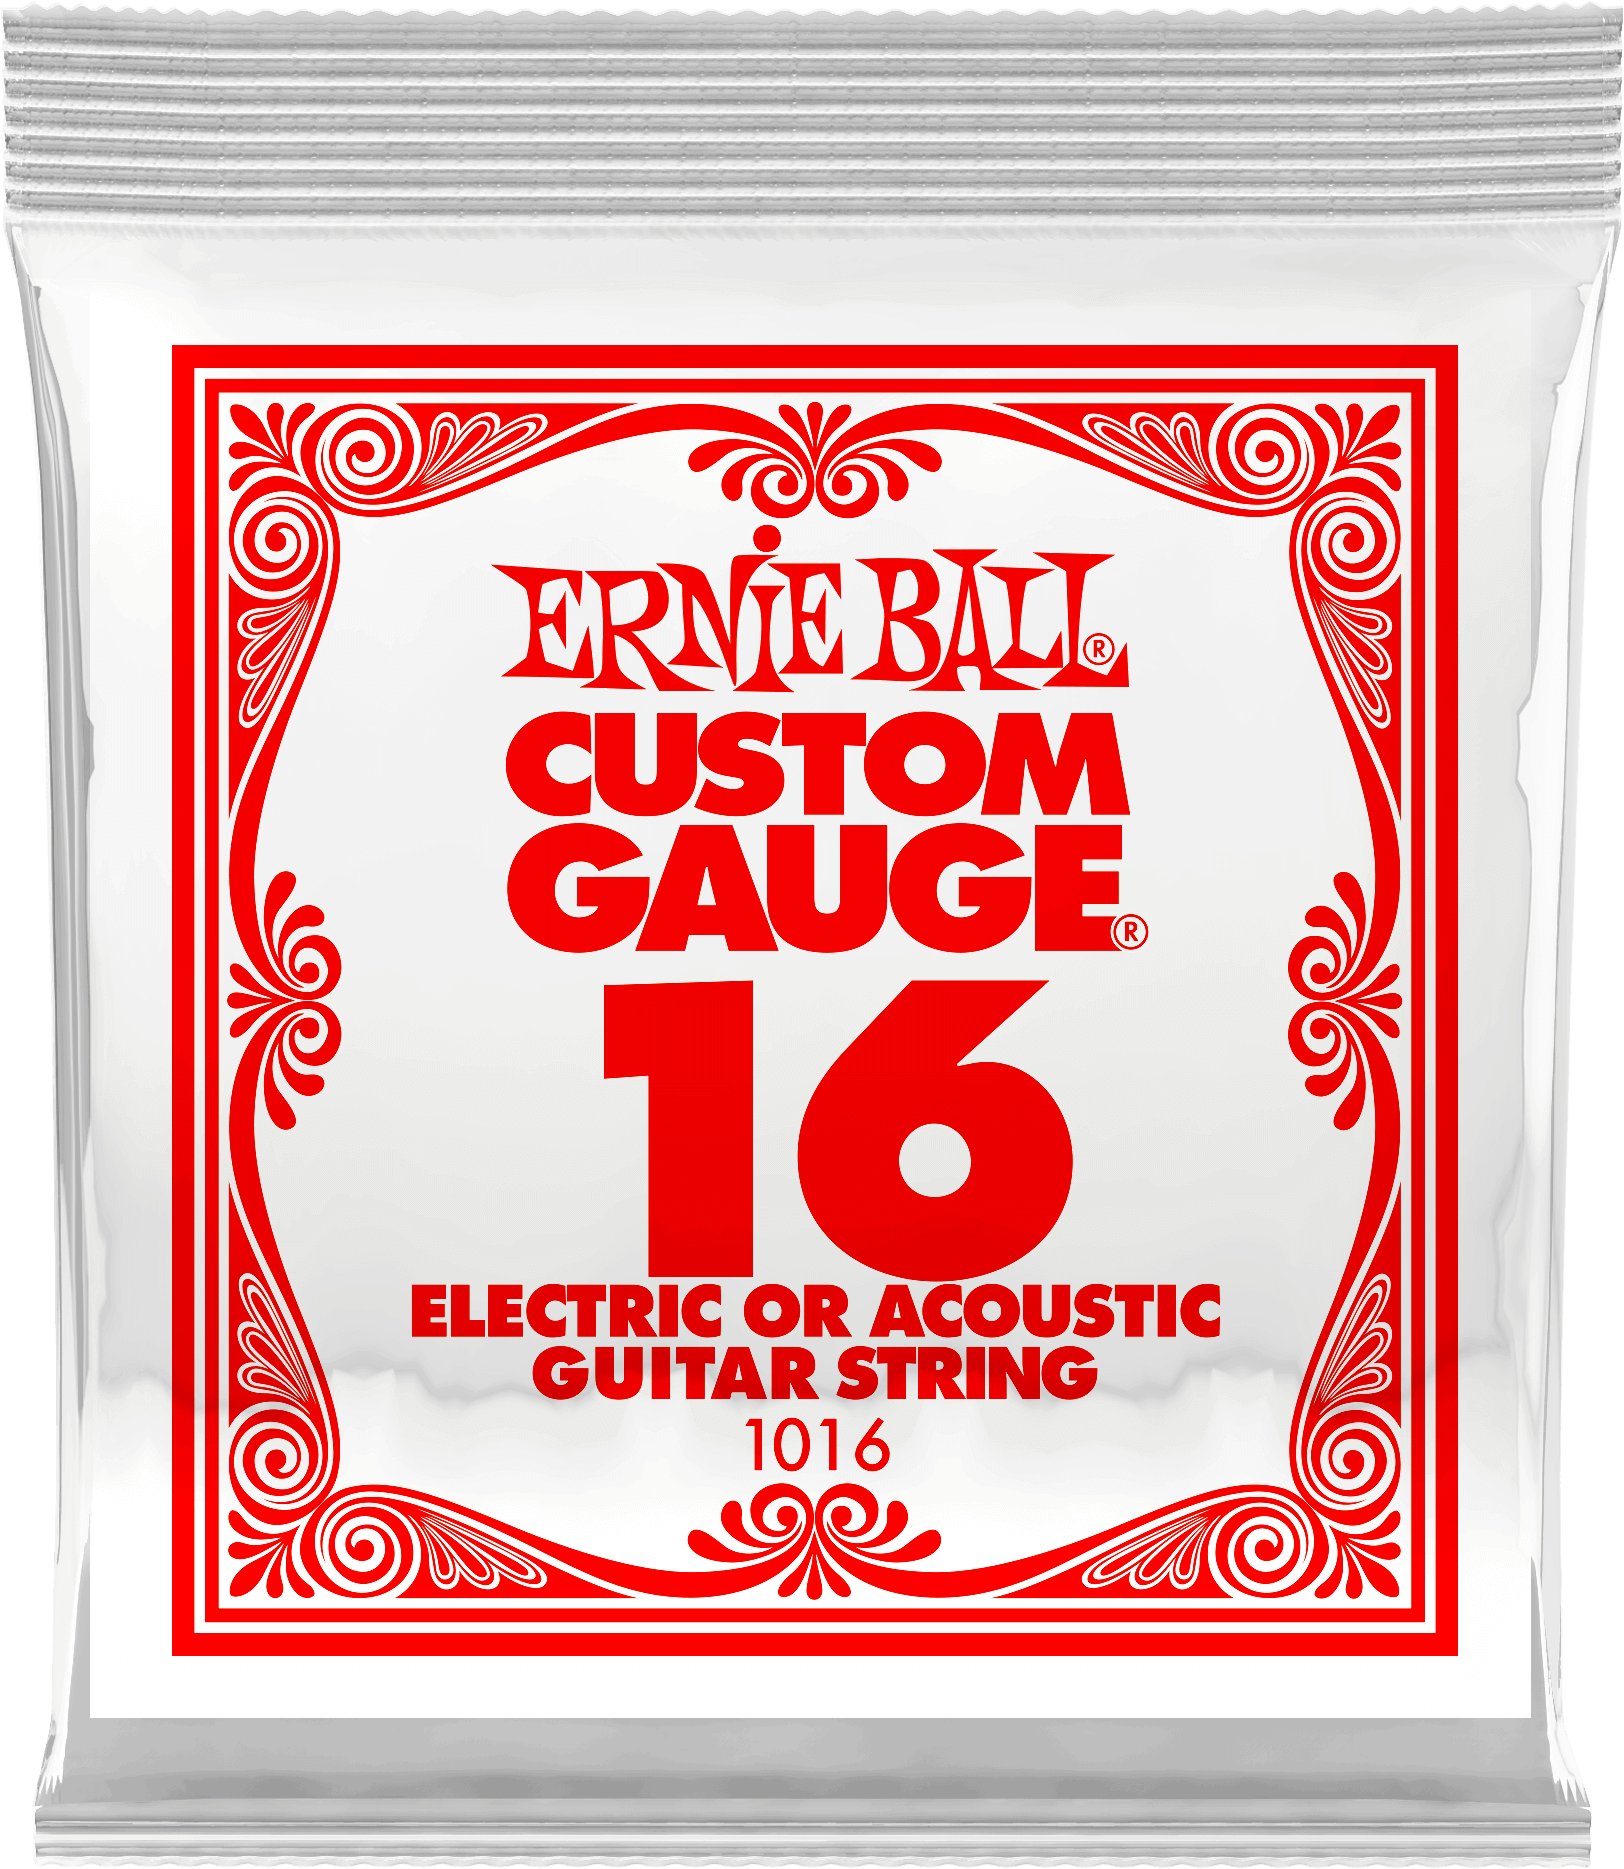 Струна для акустической и электрогитары Ernie Ball P01016 Custom gauge, сталь, калибр 16, Ernie Ball (Эрни Бол)